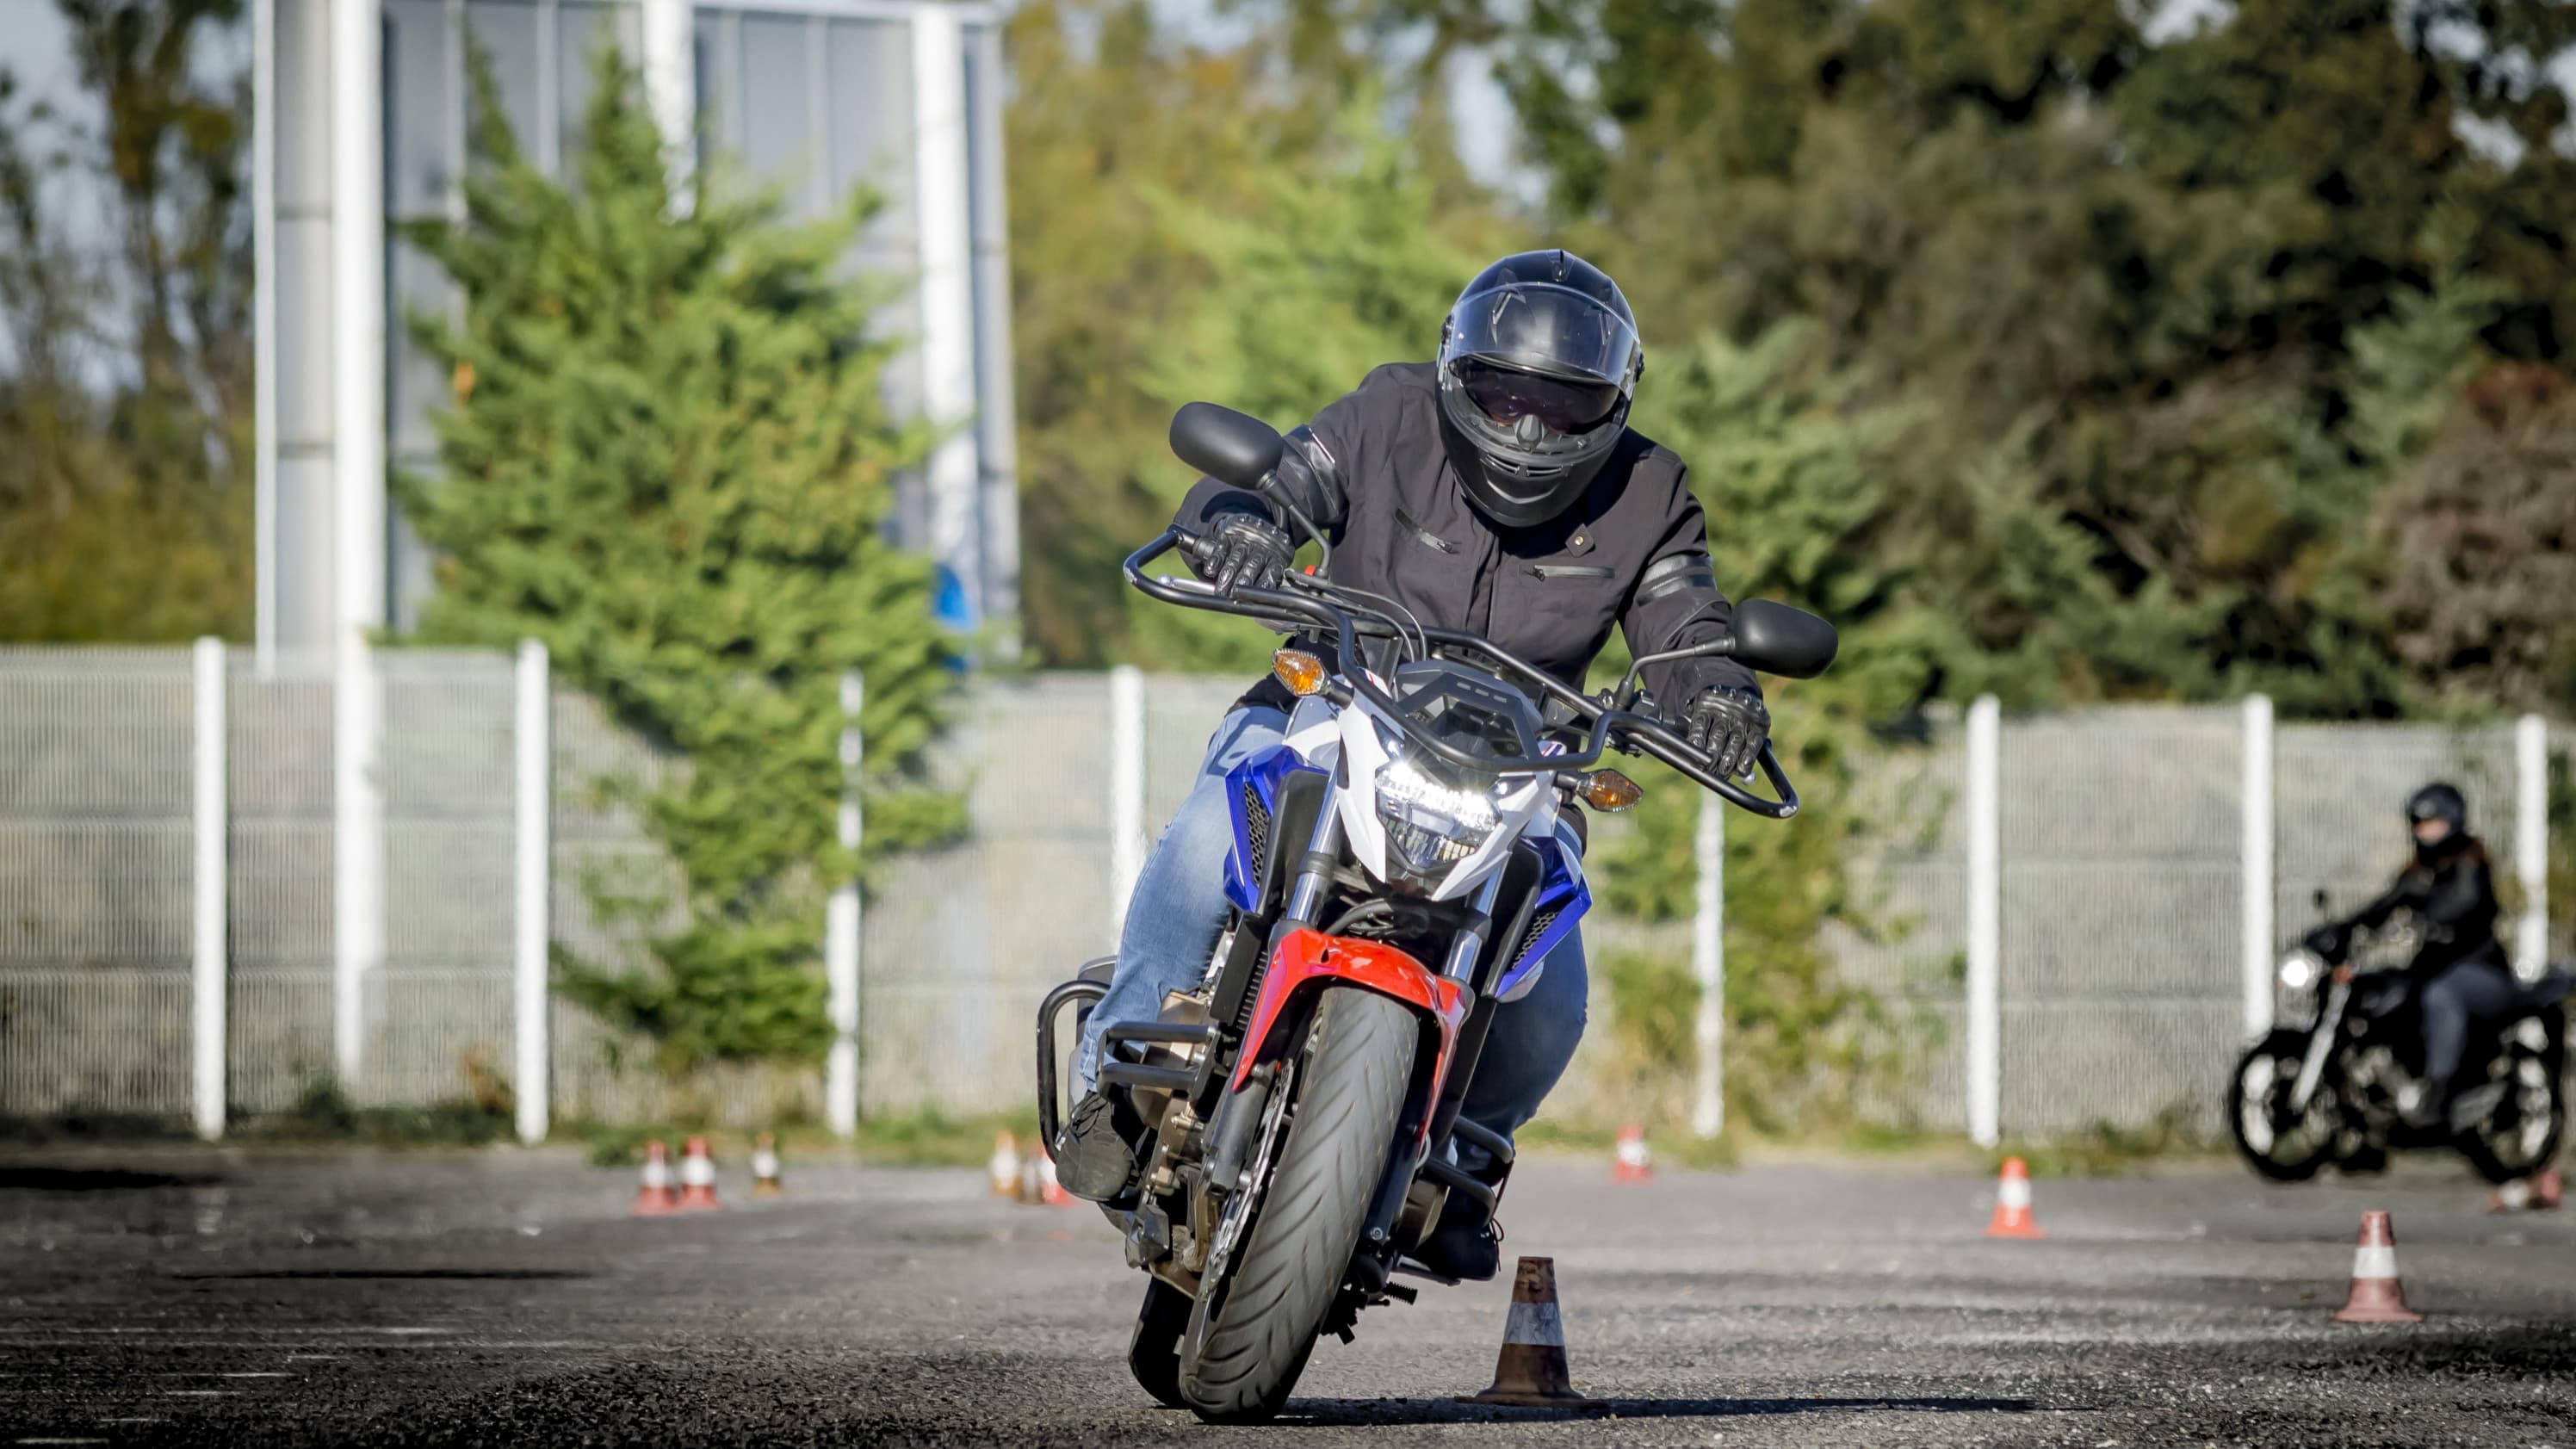 Examen théorique Moto ( ETM ) - Code de la route Moto 2020